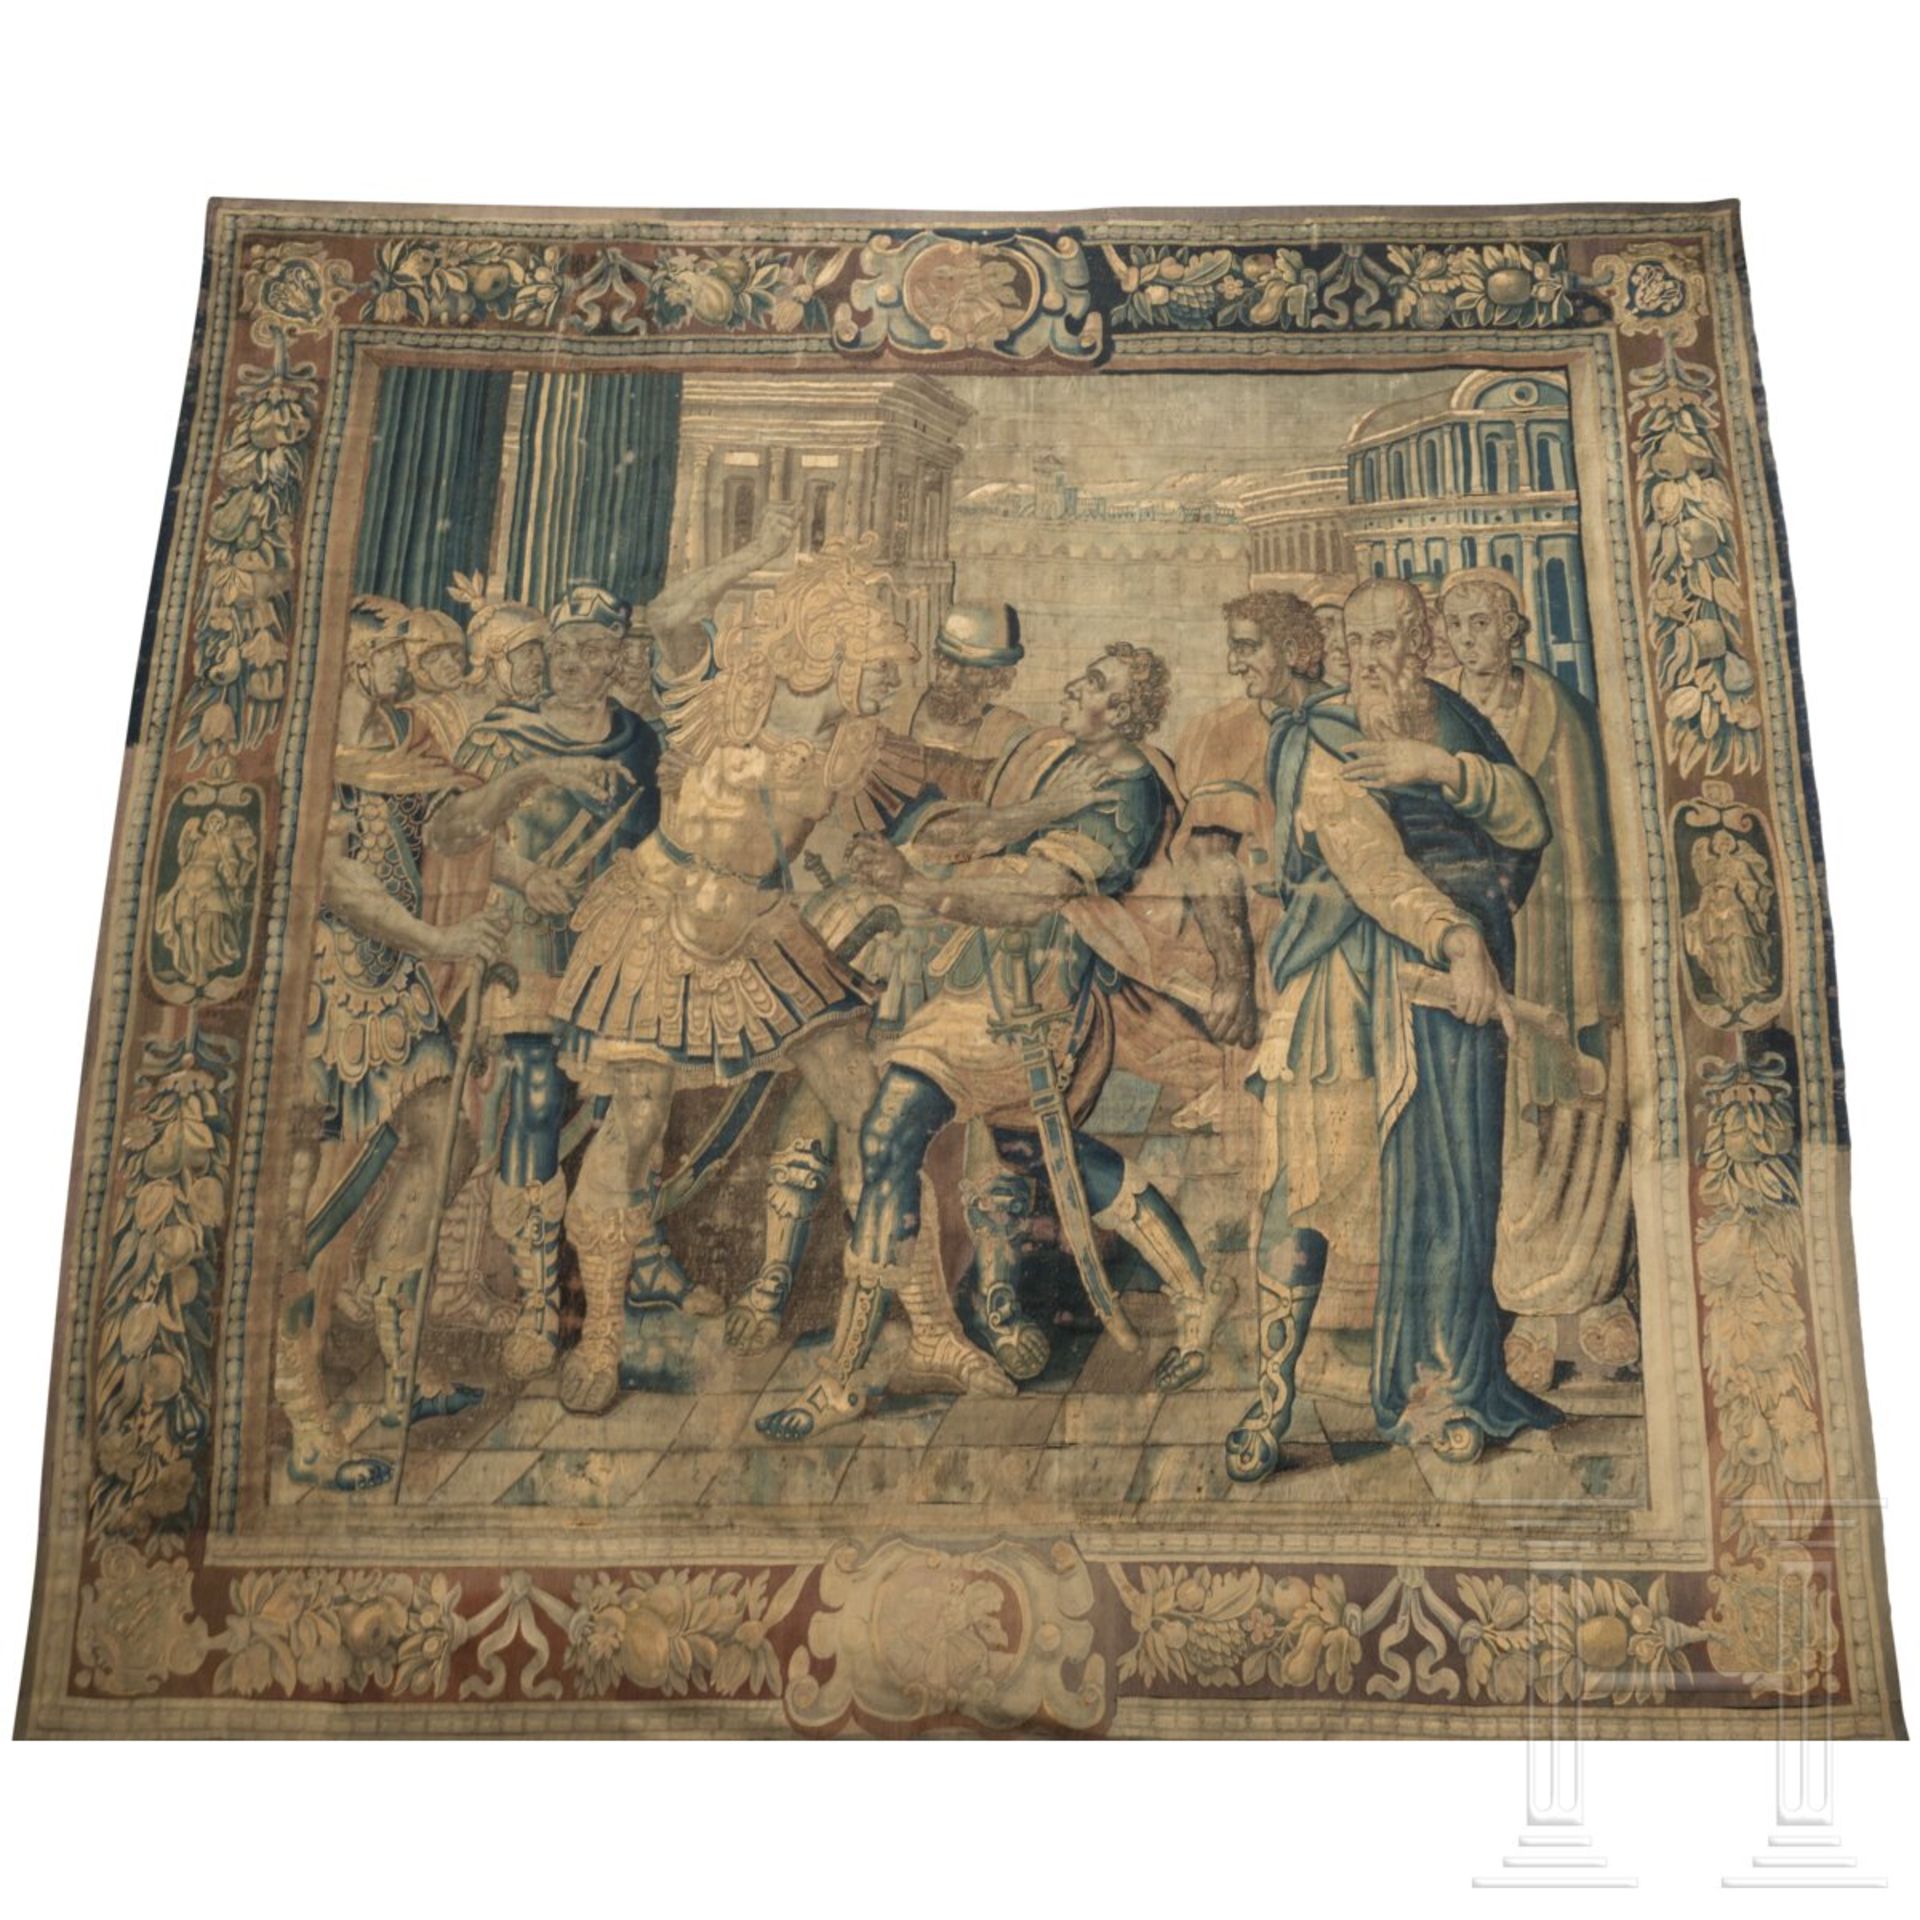 Großer Gobelin mit Darstellung der Coriolanus-Legende, Tours, Frankreich, frühes 17. Jhdt